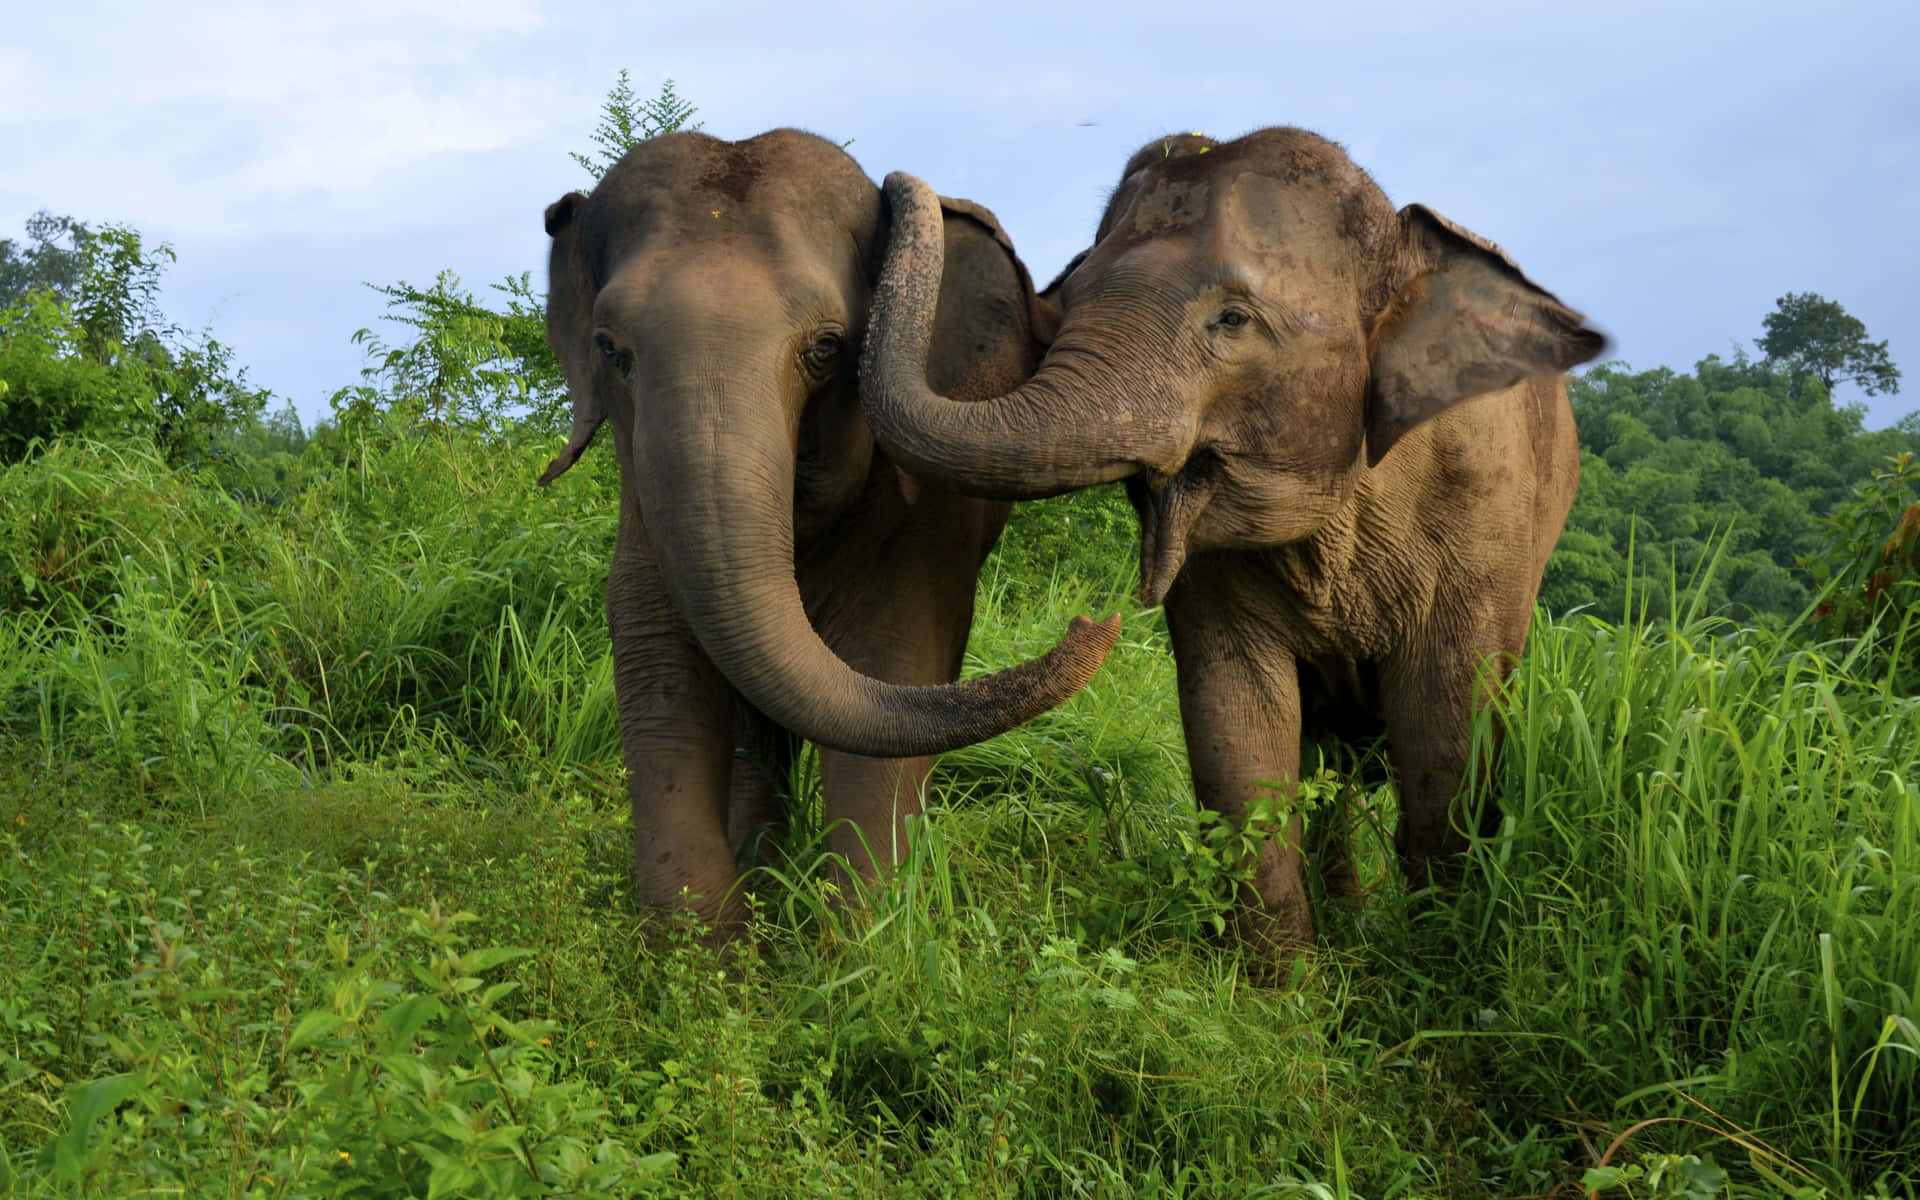 Enmajestætisk Afrikansk Elefant Står I En Grøn Mark.